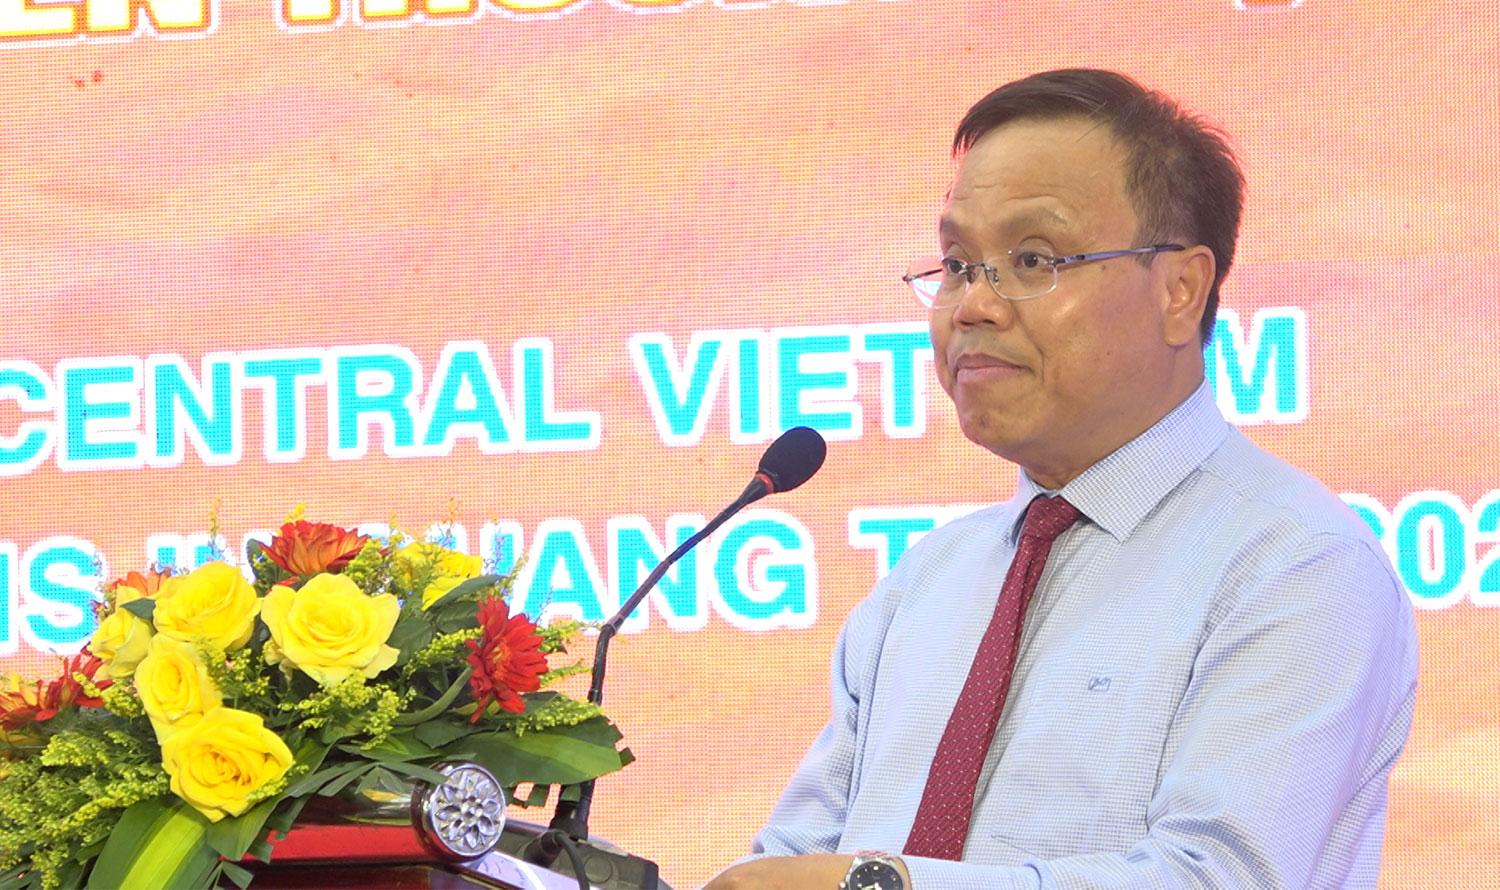 Đồng chí Lê Đức Tiến, Phó Chủ tịch UBND tỉnh Quảng Trị phát biểu tại hội nghị.